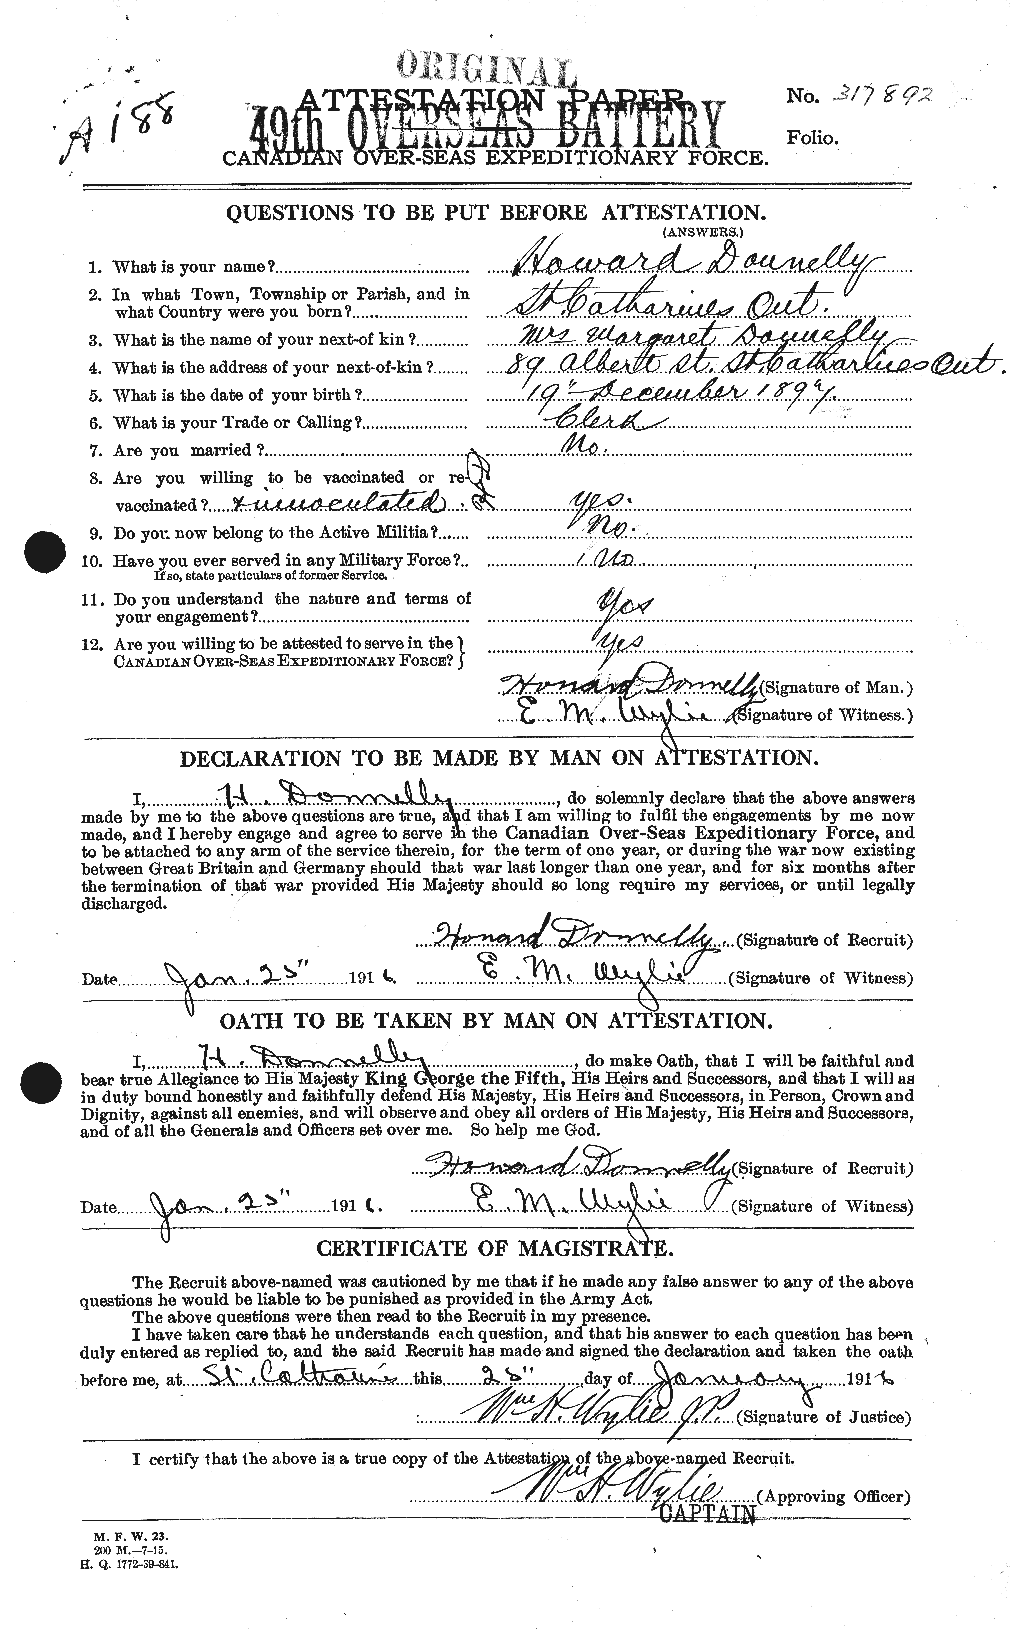 Dossiers du Personnel de la Première Guerre mondiale - CEC 294819a